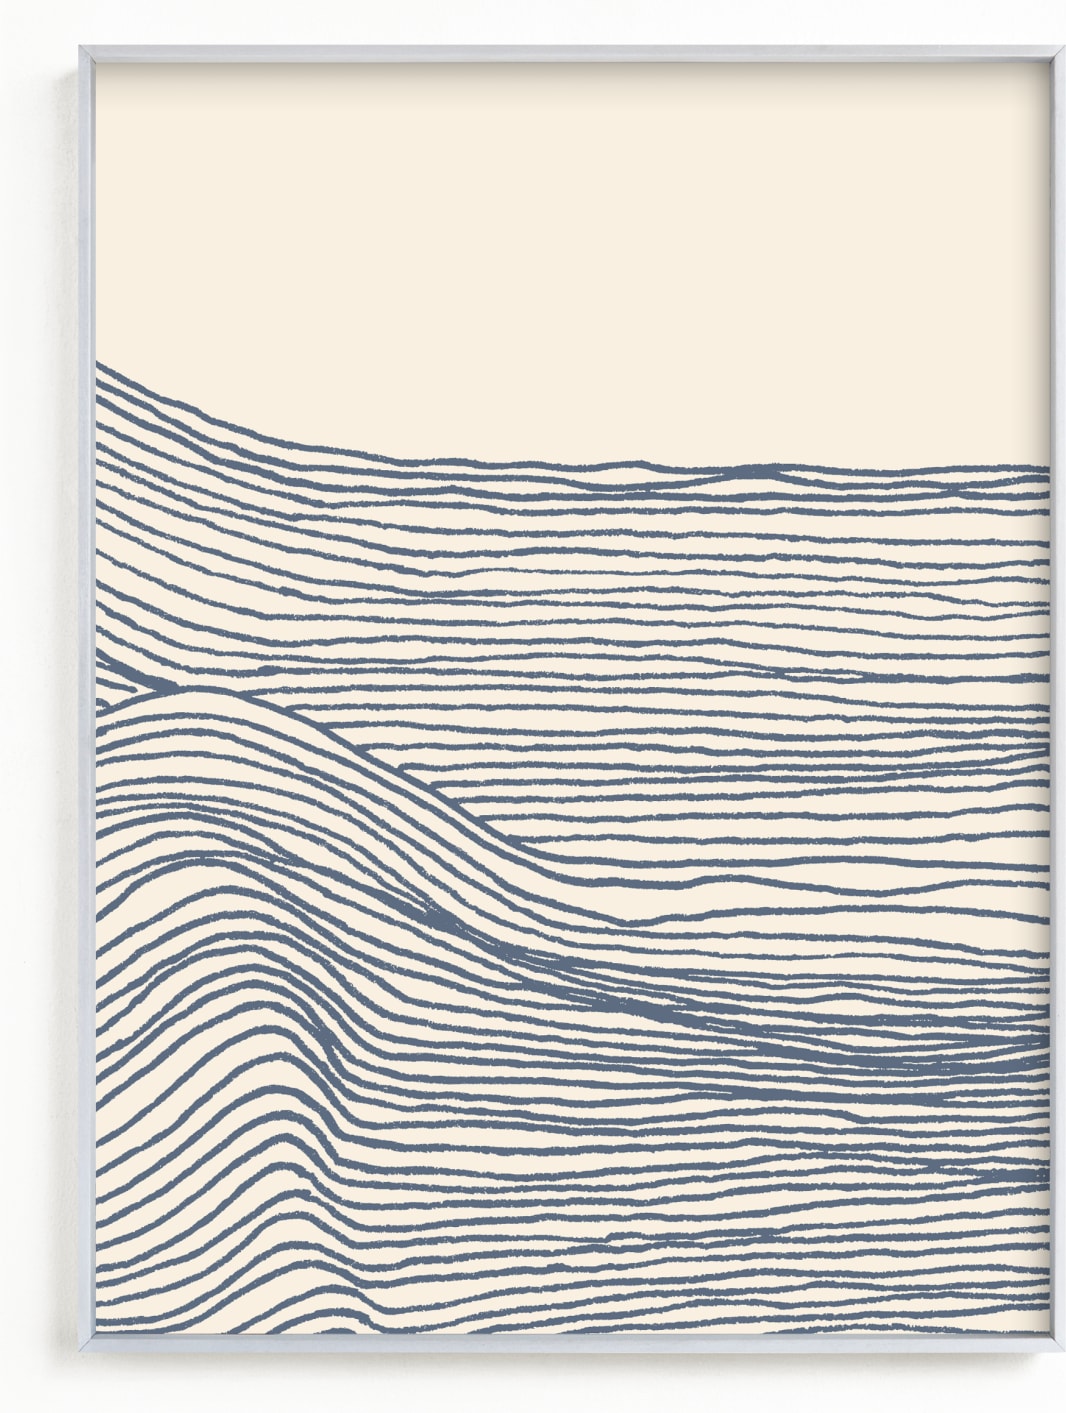 This is a blue art by Jayne Alfieri called Rolling Waves II.